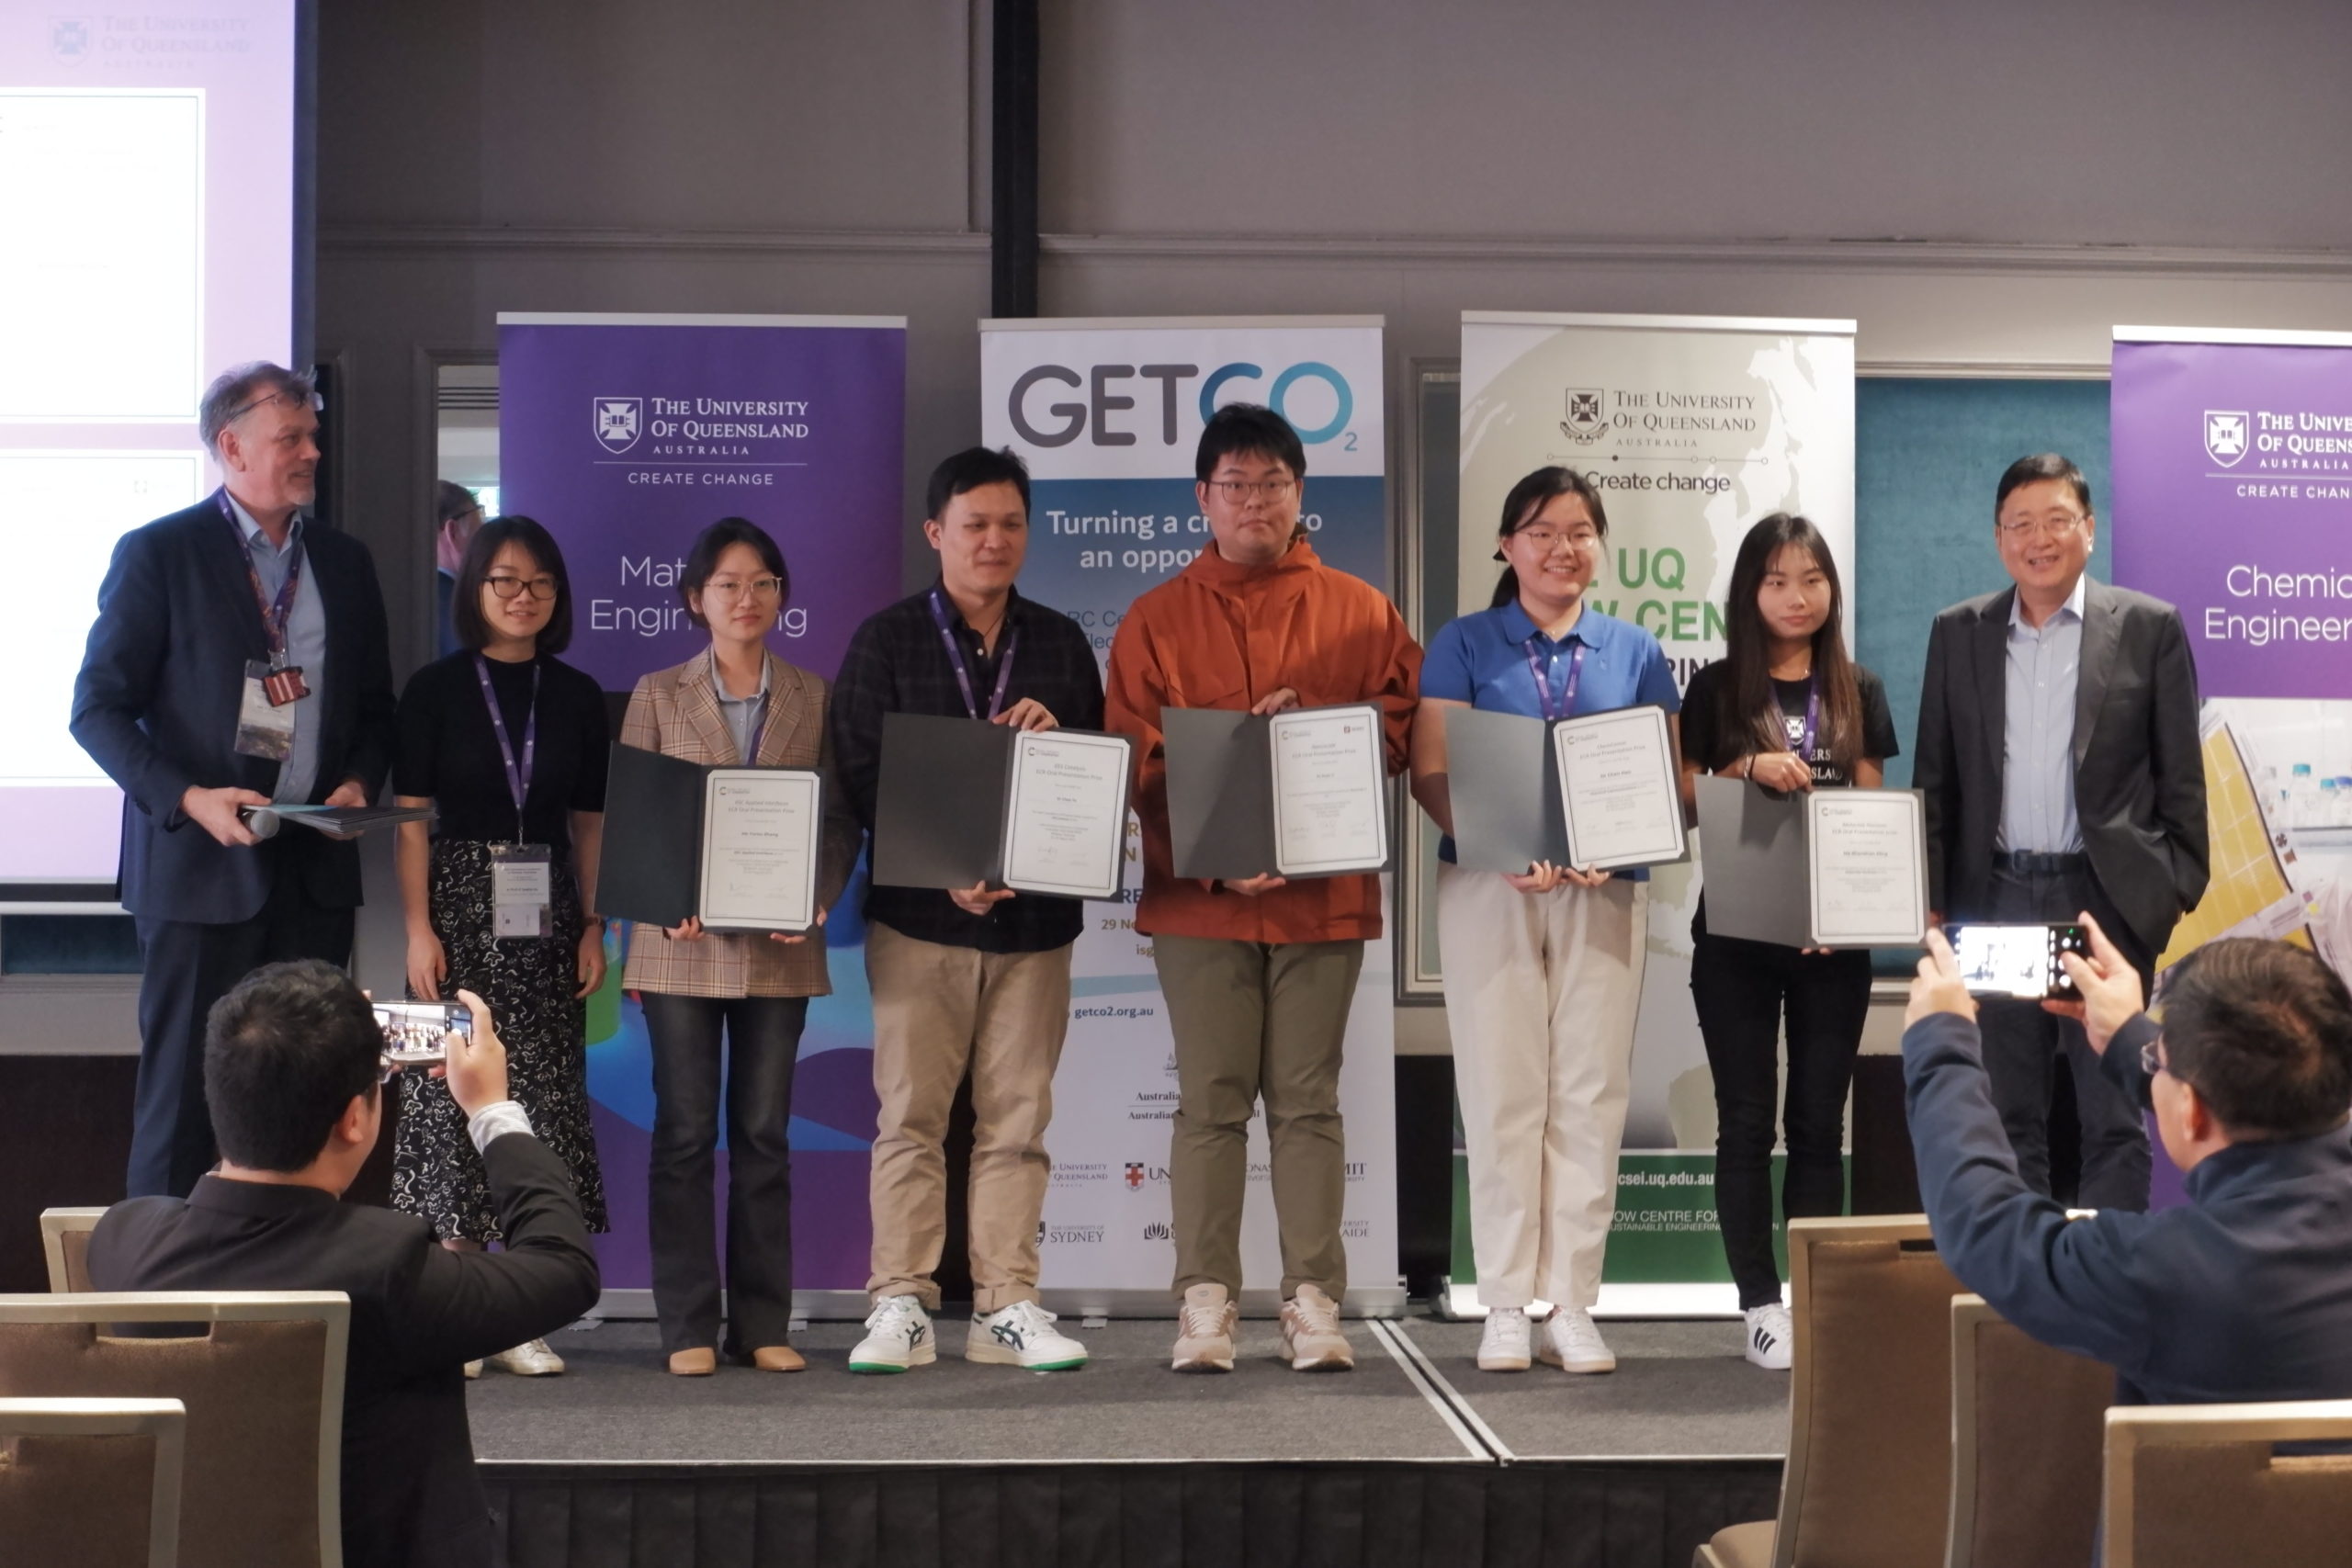 Alan Rowan, Zi Sophia Gu and Shizhang Qiao stood beside Yurou Zhang, Chao Ye, Huan Li, Chen Han and Shanshan Ding holding their presentation prize certificates.